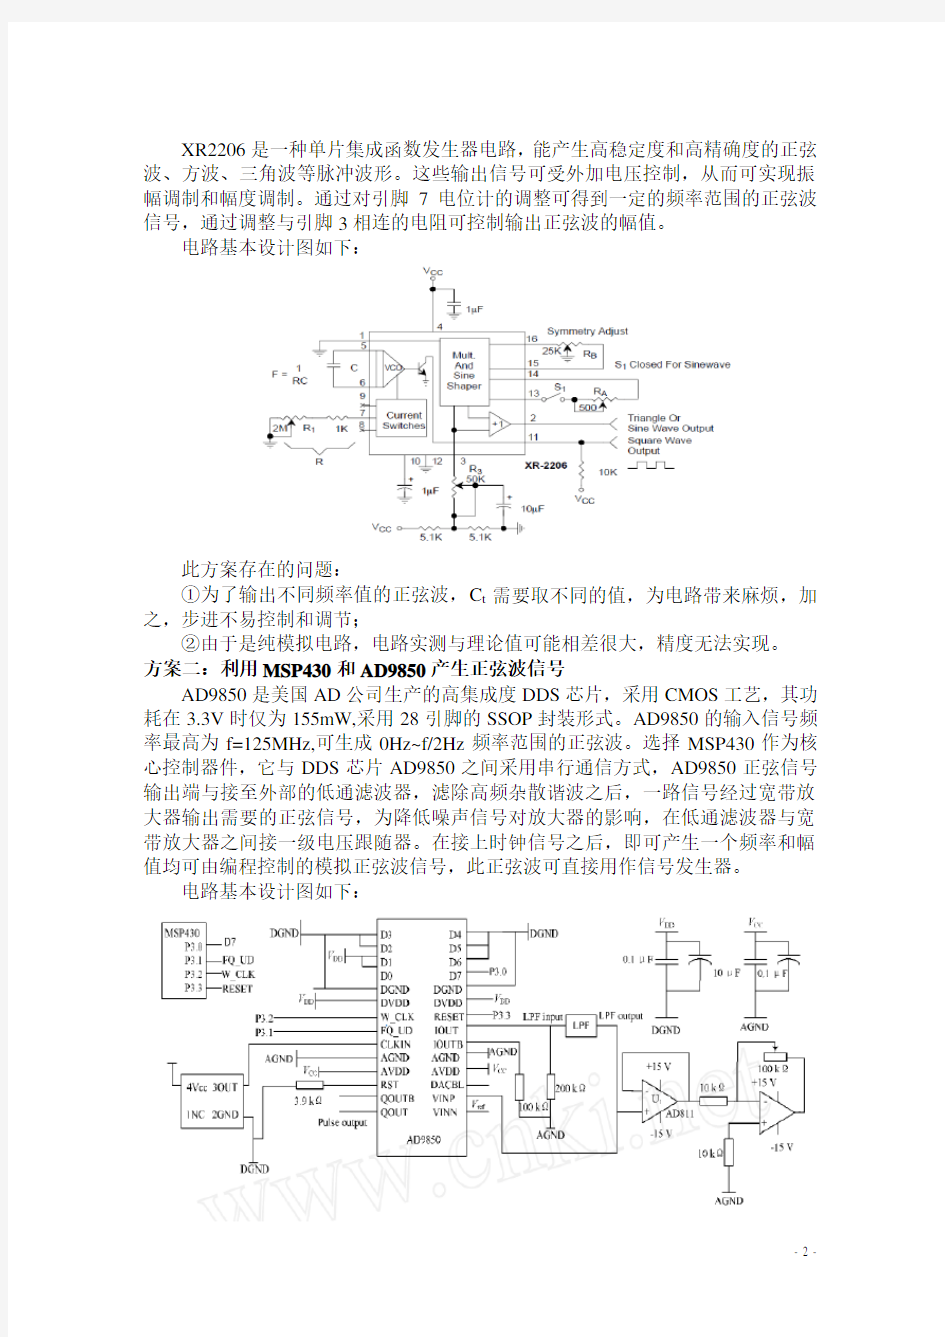 2012江苏电子设计大赛 网络阻抗测试仪报告